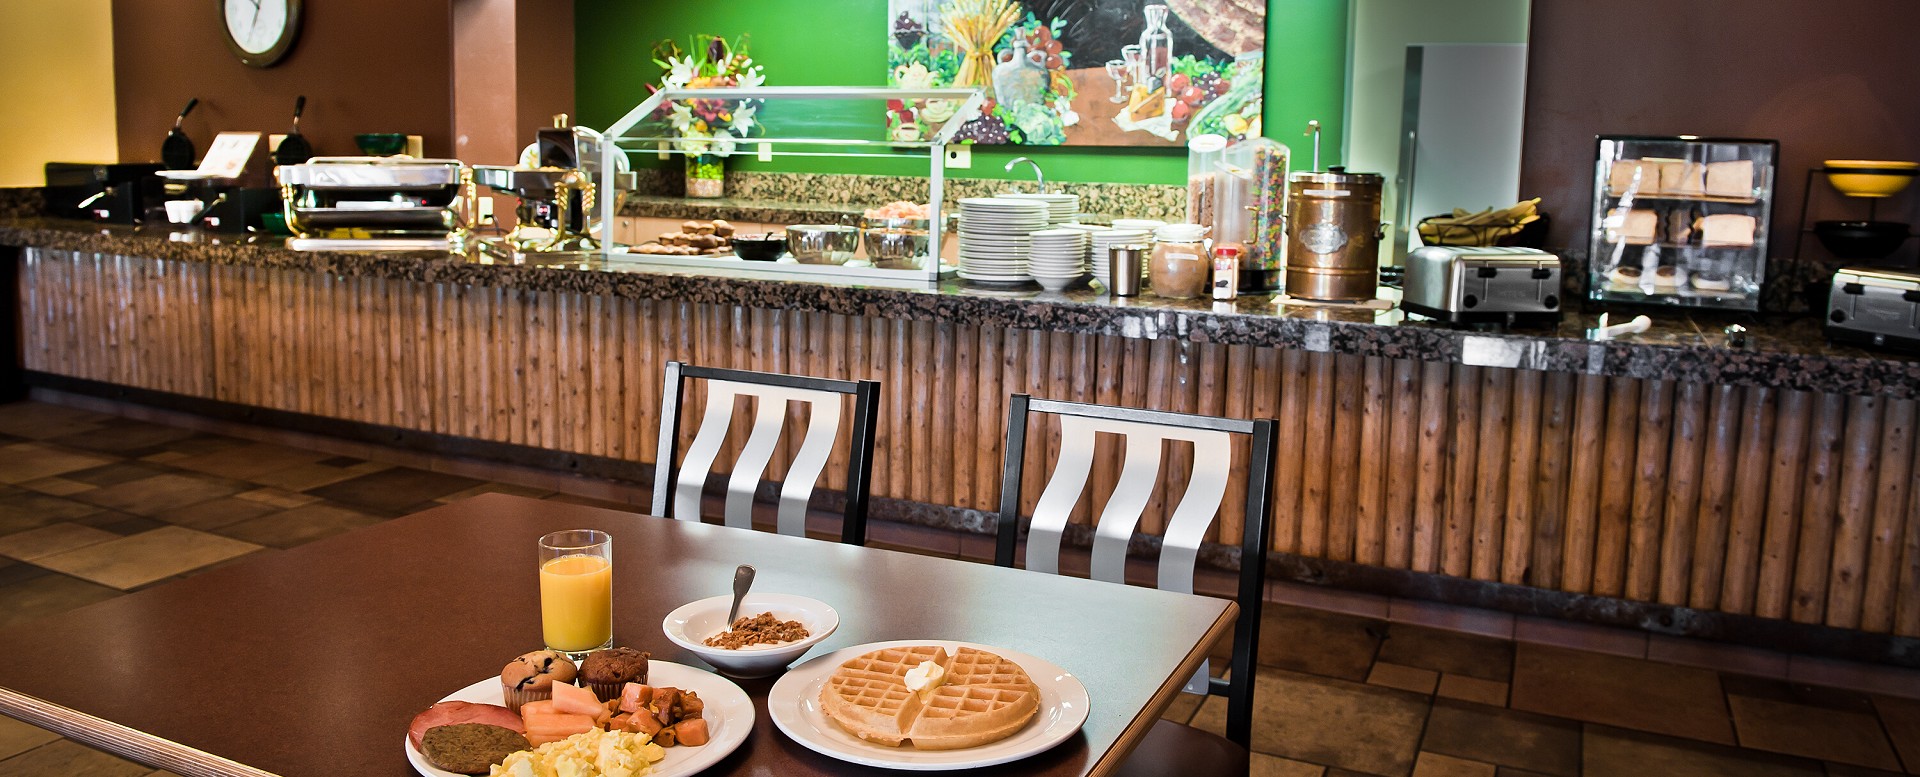 Best Western Plus Arroyo Roble Hotel - Breakfast Buffet